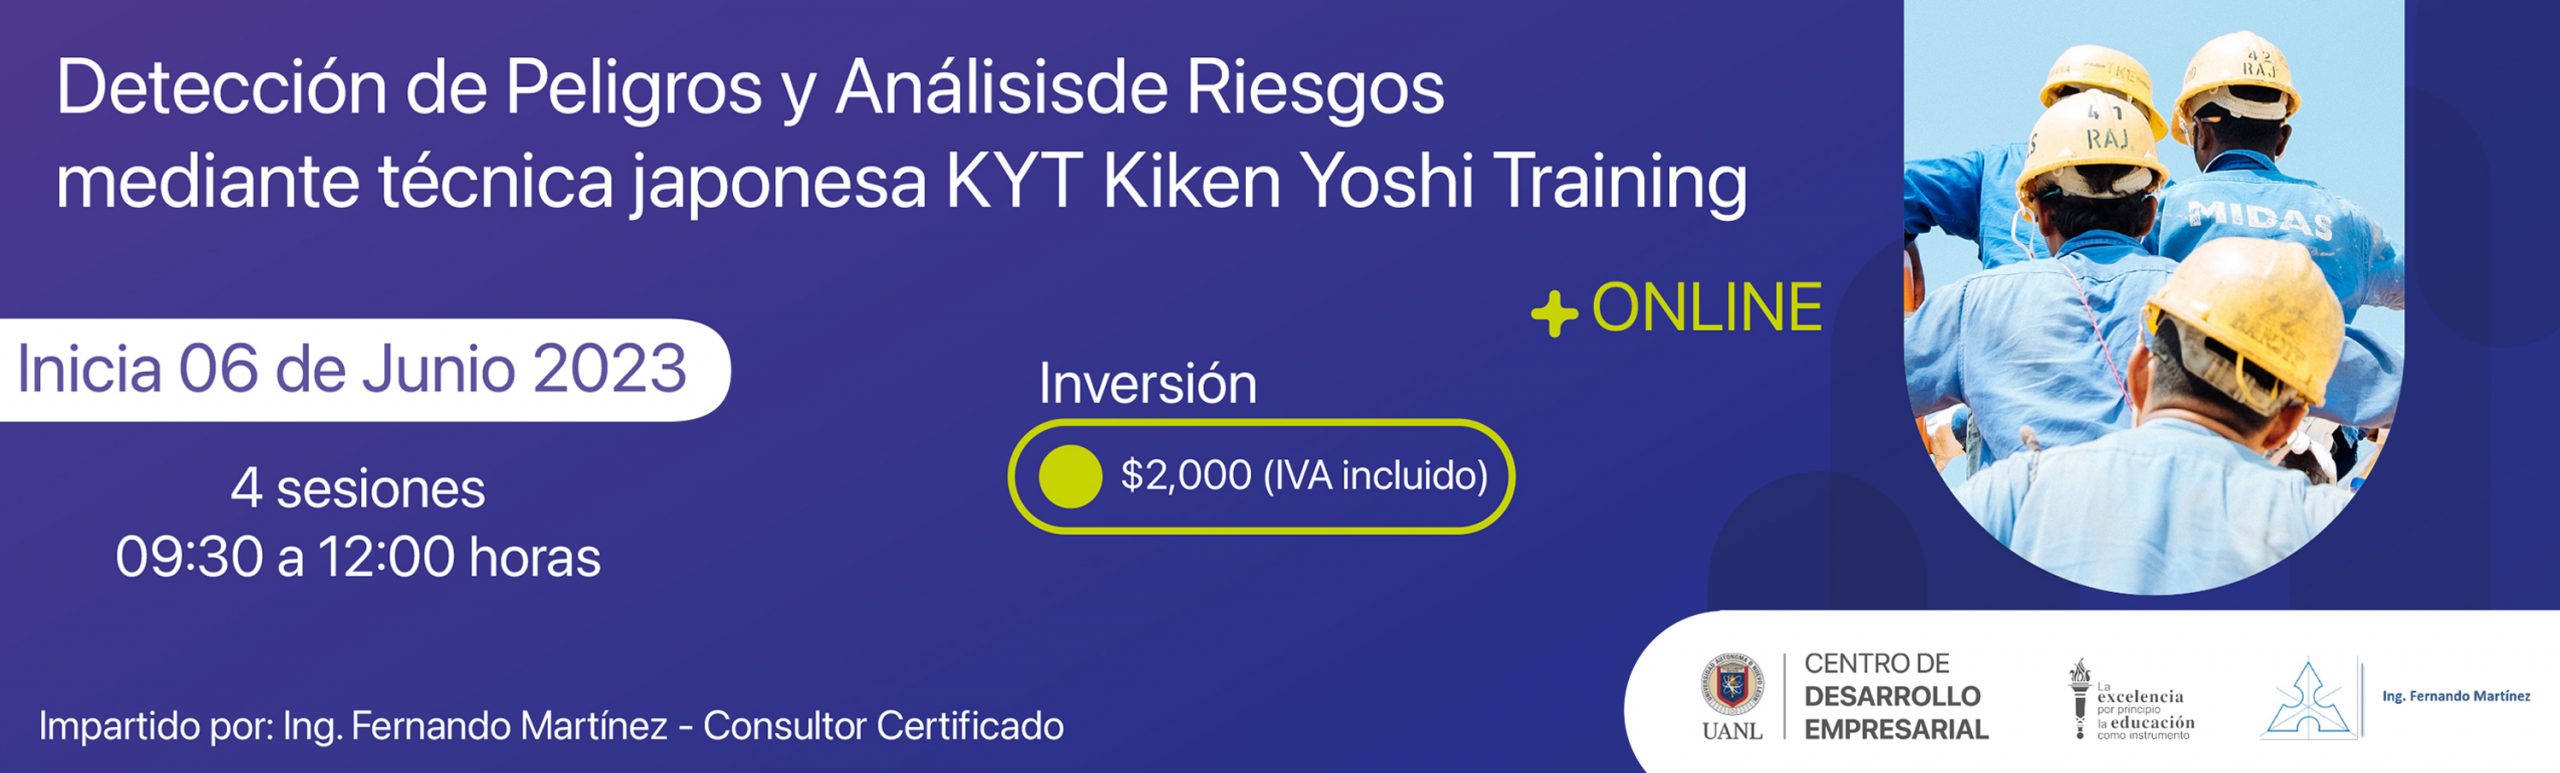 Detección de Peligros y Análisis de Riesgos mediante técnica japonesa KYT Kiken Yoshi Training